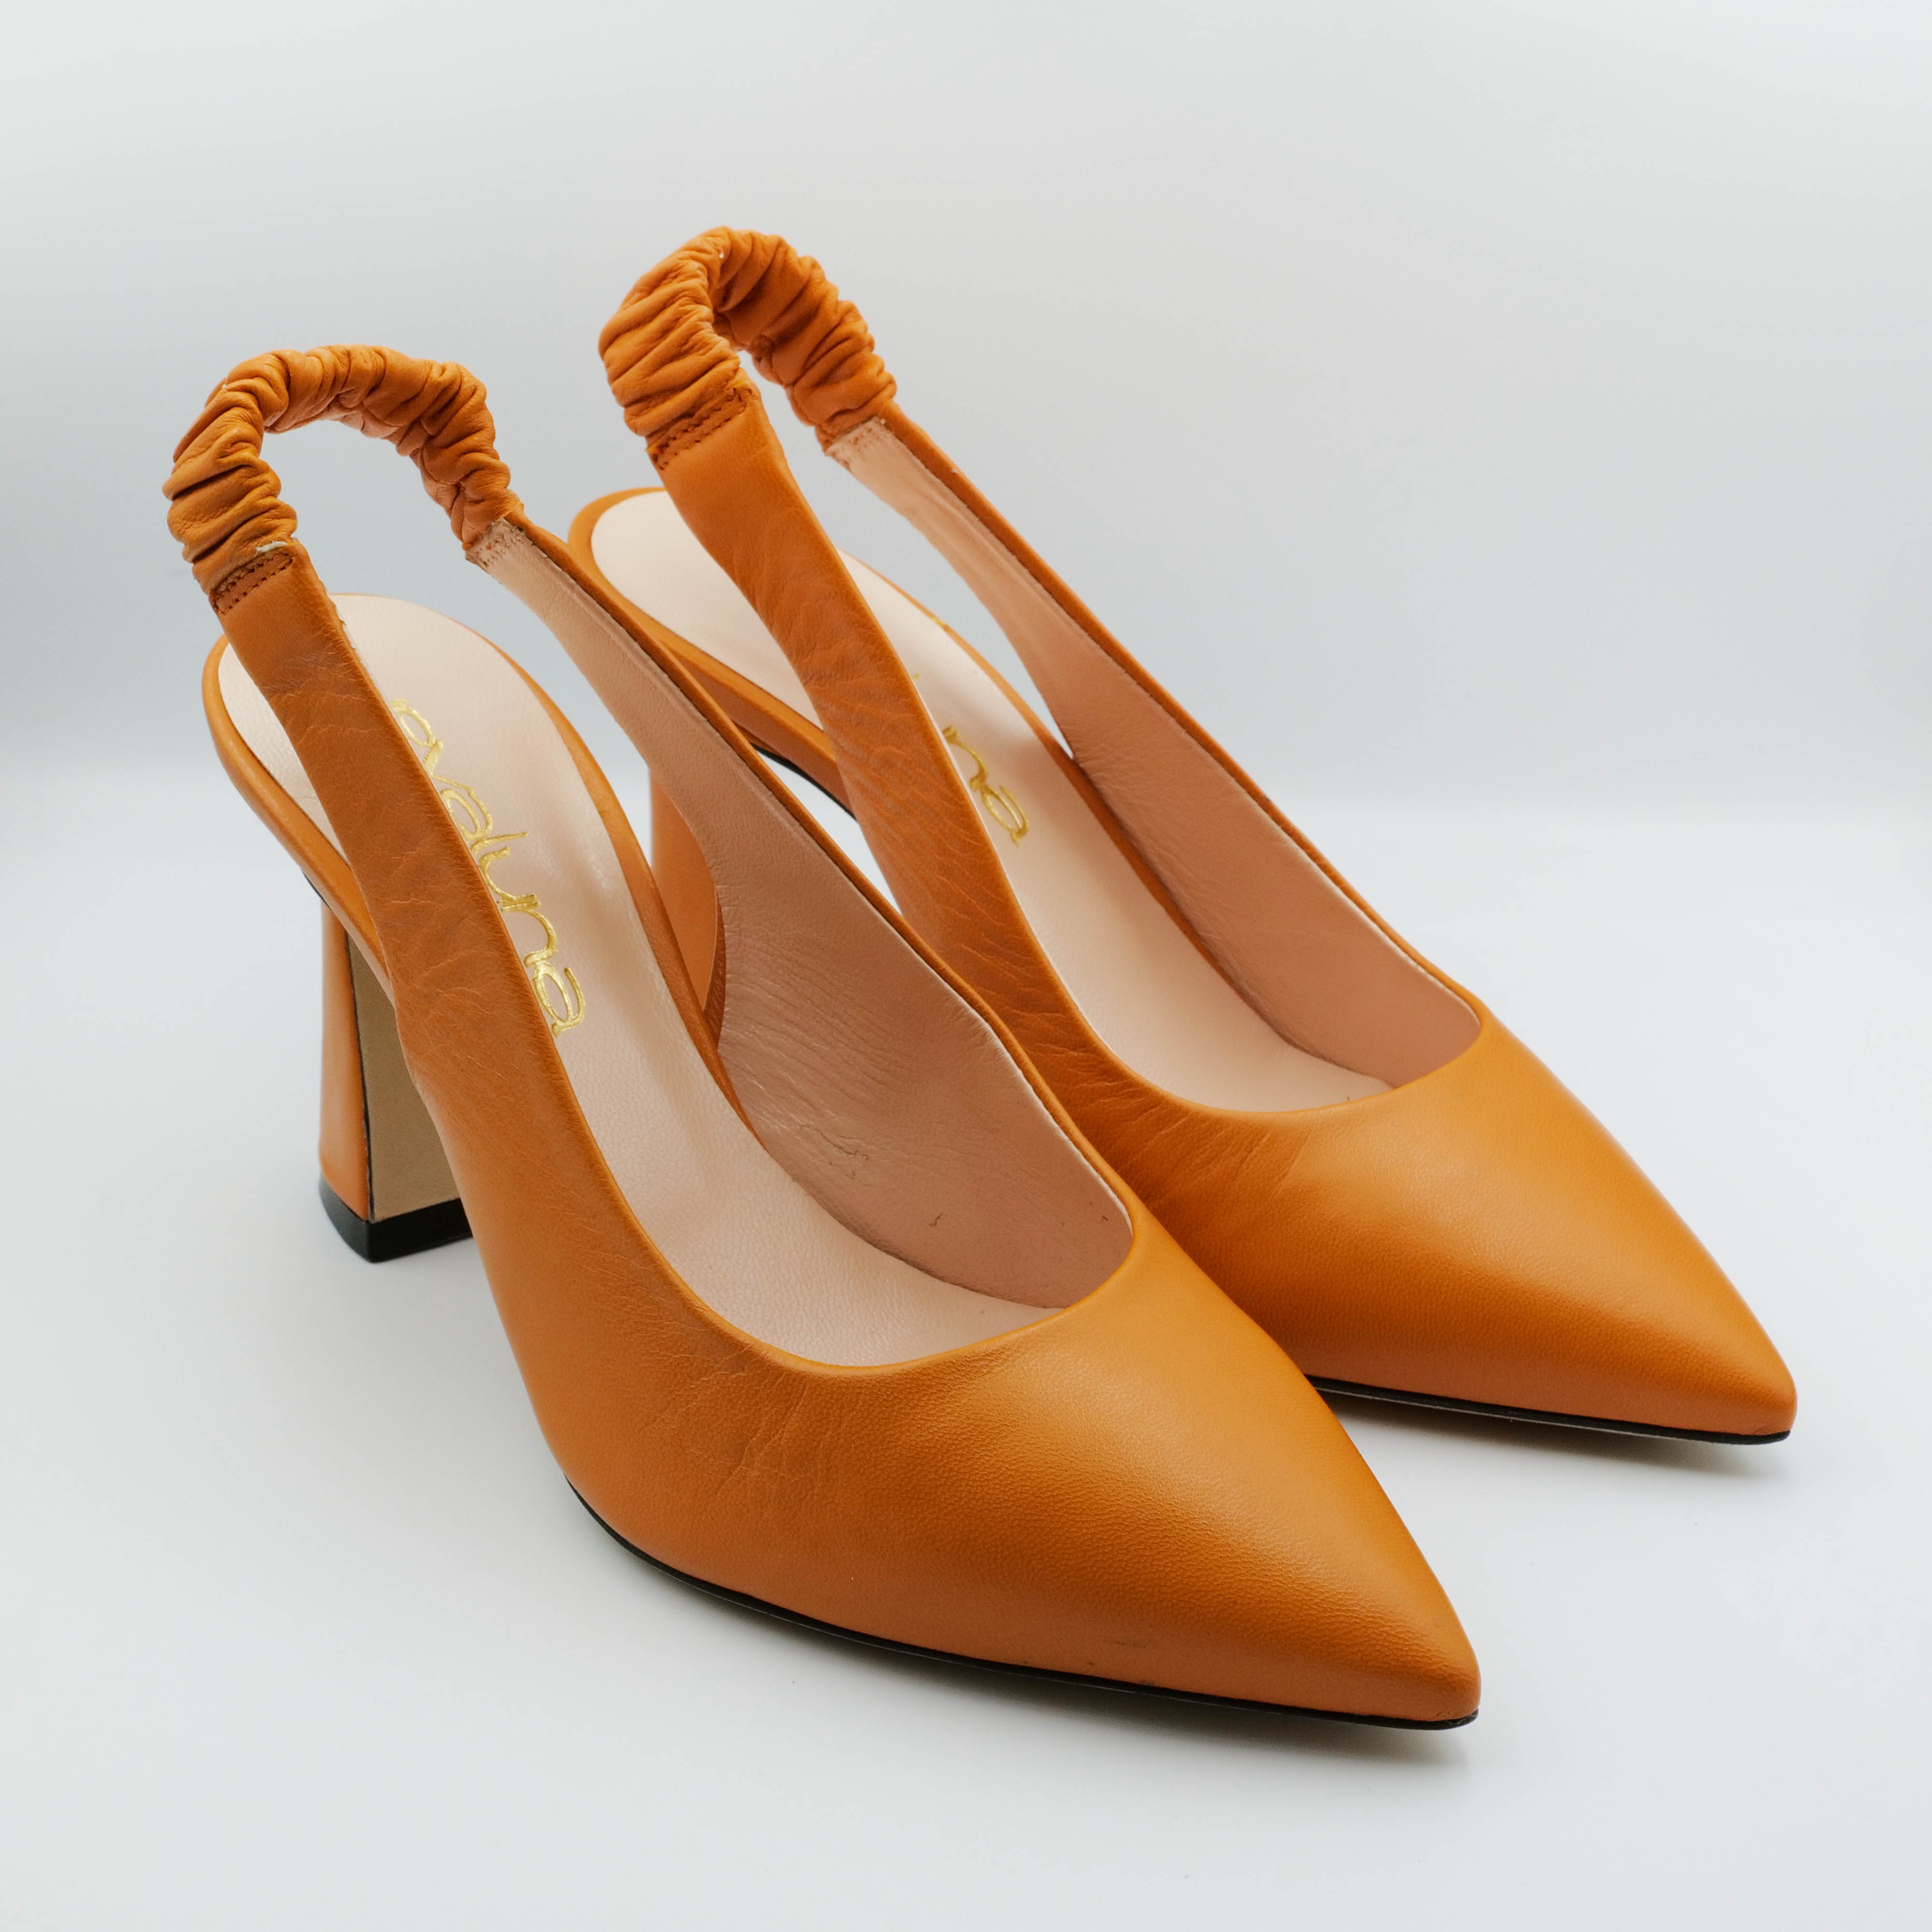 Eva Luna - Slingback in pelle arancio con elastico